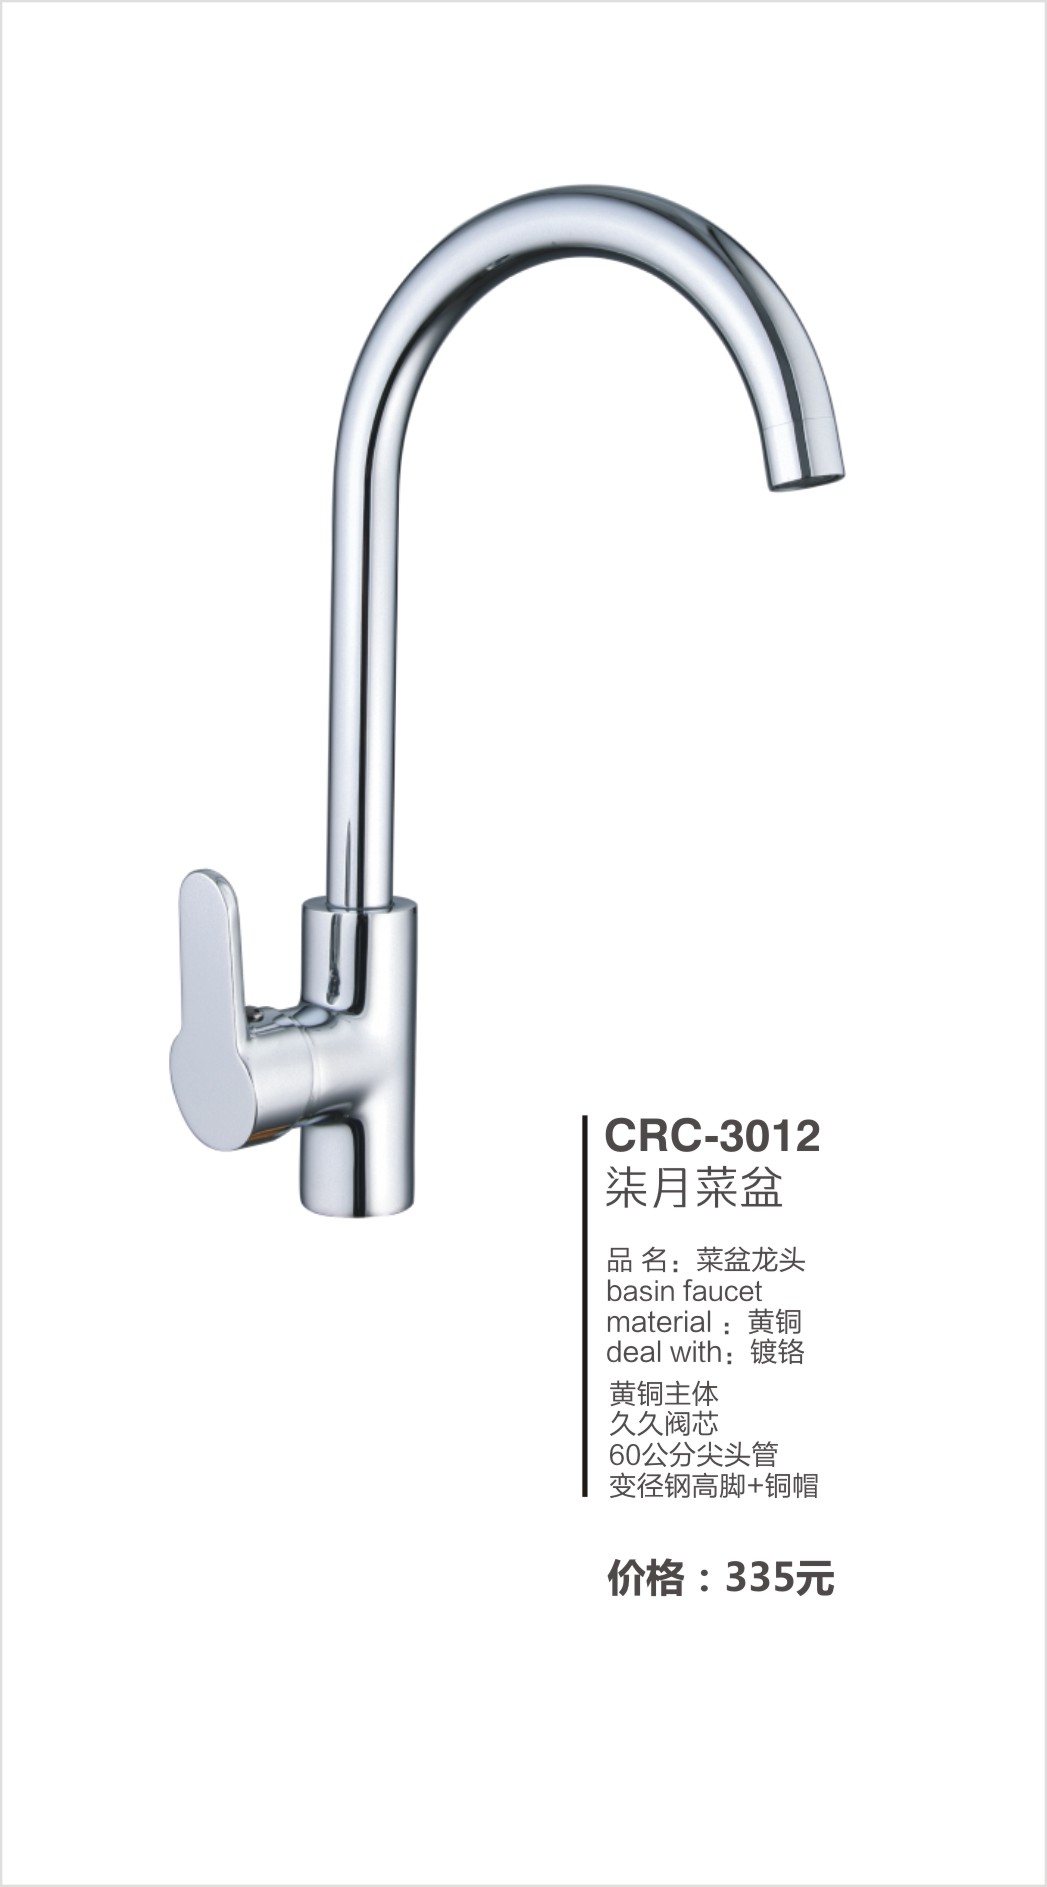 超人（chaoren）卫浴系列水龙头CRC-3012